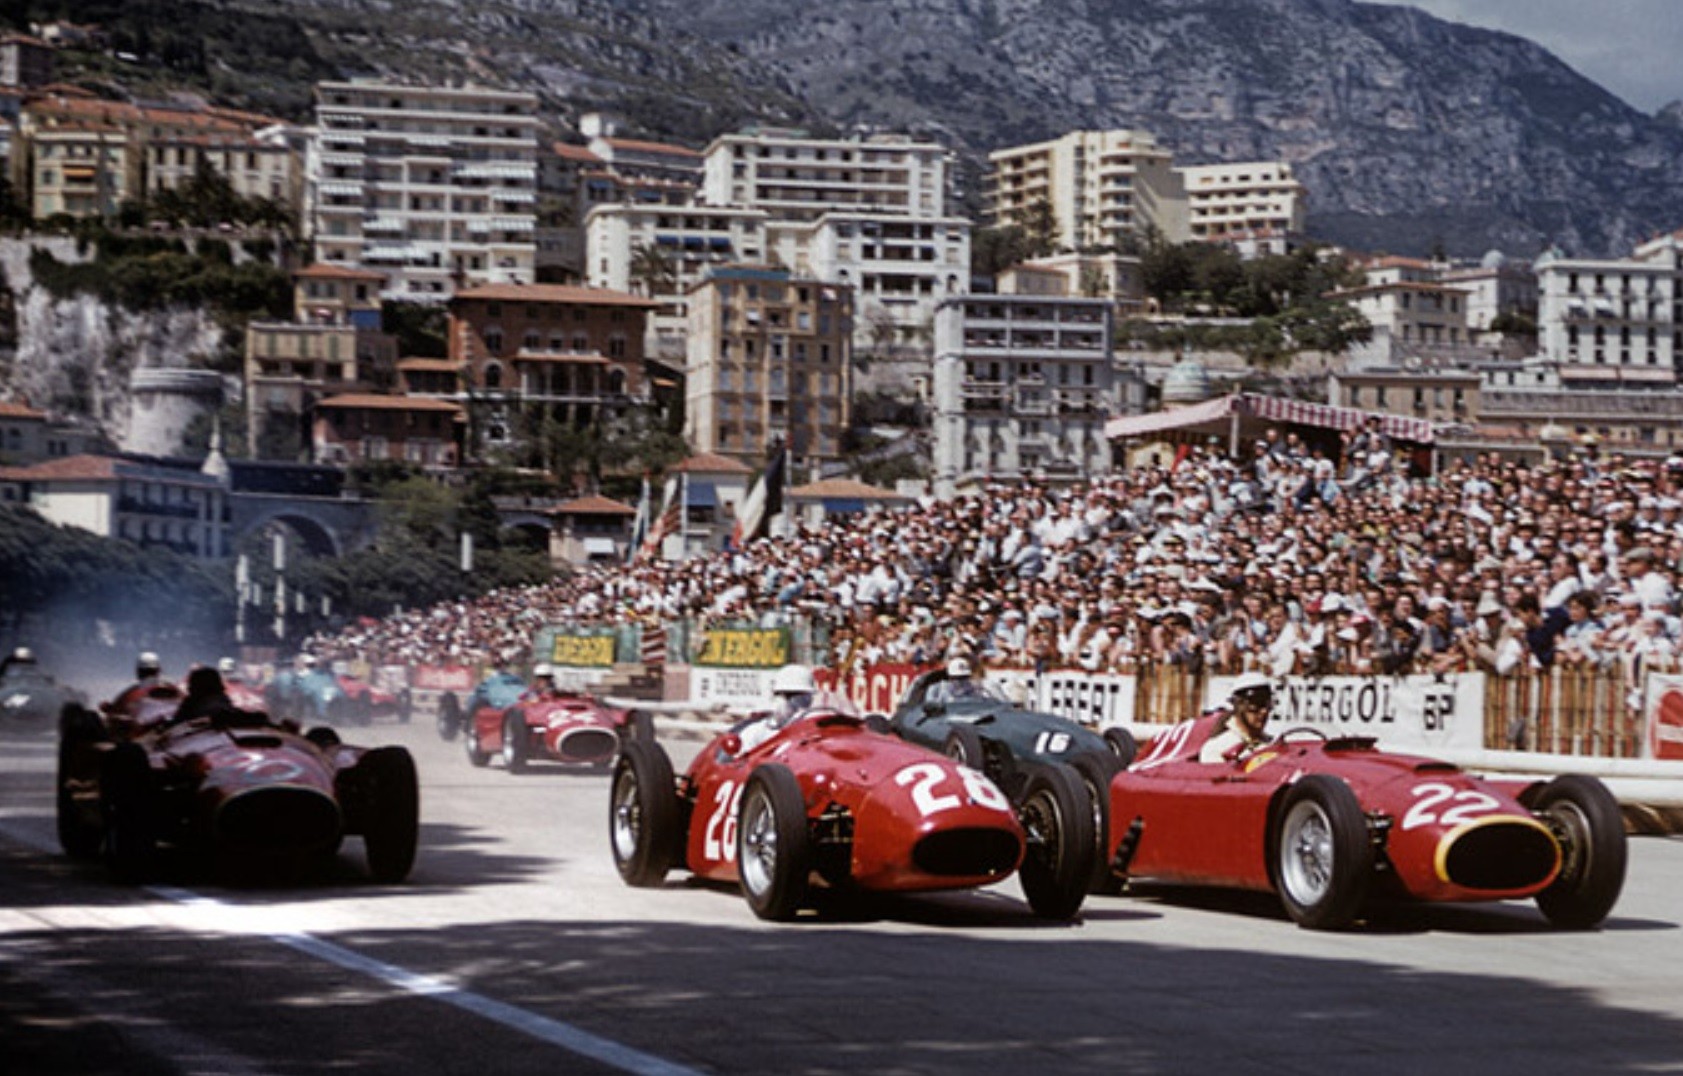 Fórmula 1 de 1956 teve o tetracampeonato de Fangio e Ferrari vencendo com carro Lancia